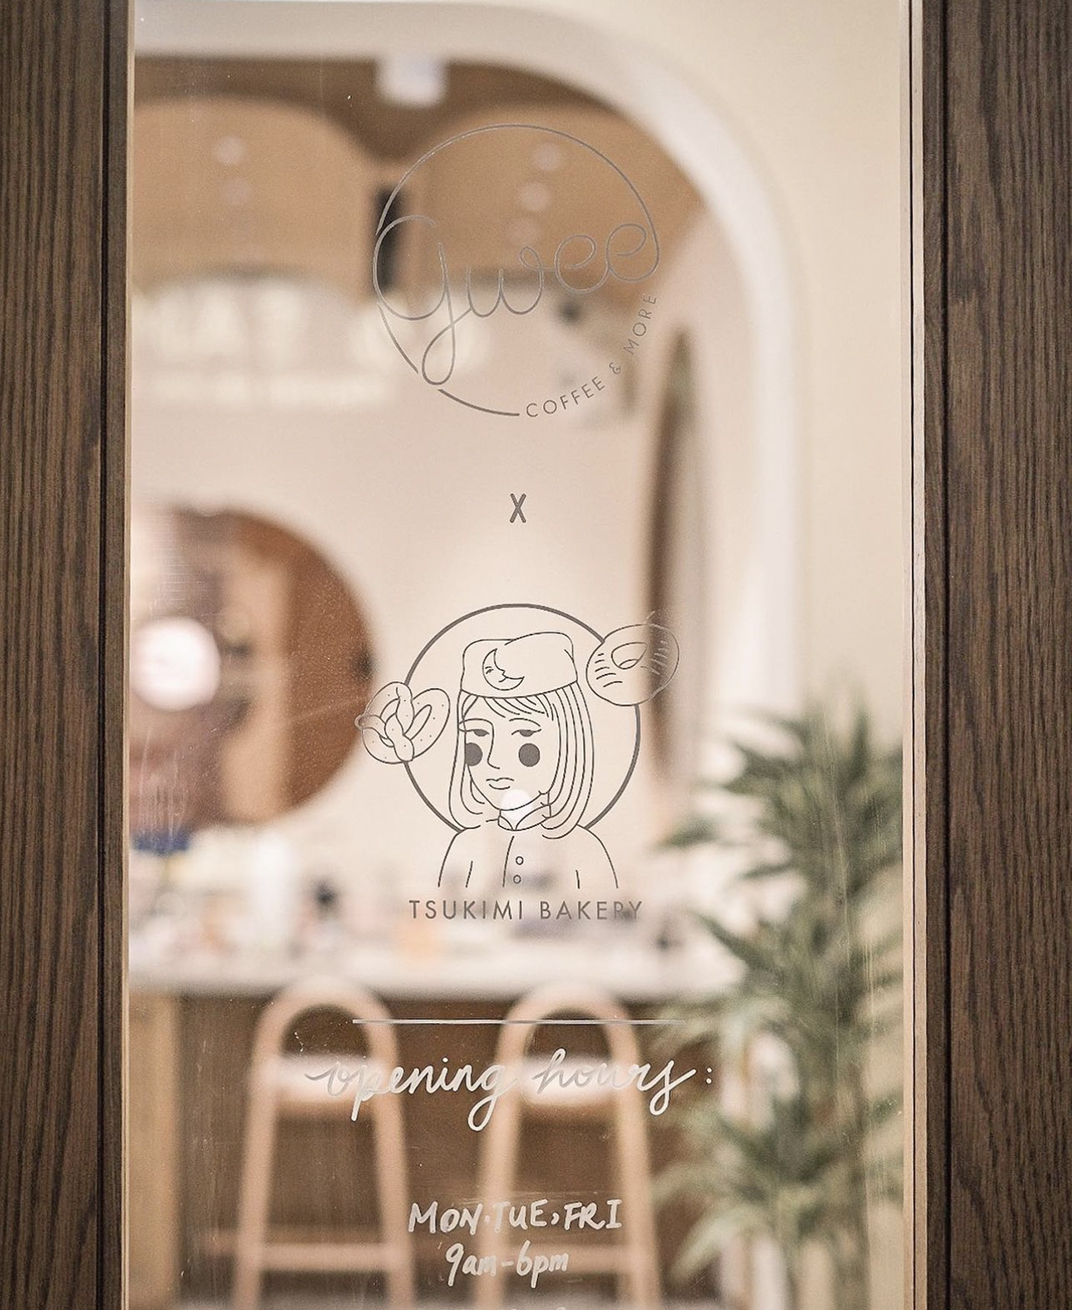 	 咖啡店Gwee Coffee & More 香港 咖啡店 广州 上海 西安 成都 深圳 喜茶 设计师 概念店 logo设计 vi设计 空间设计